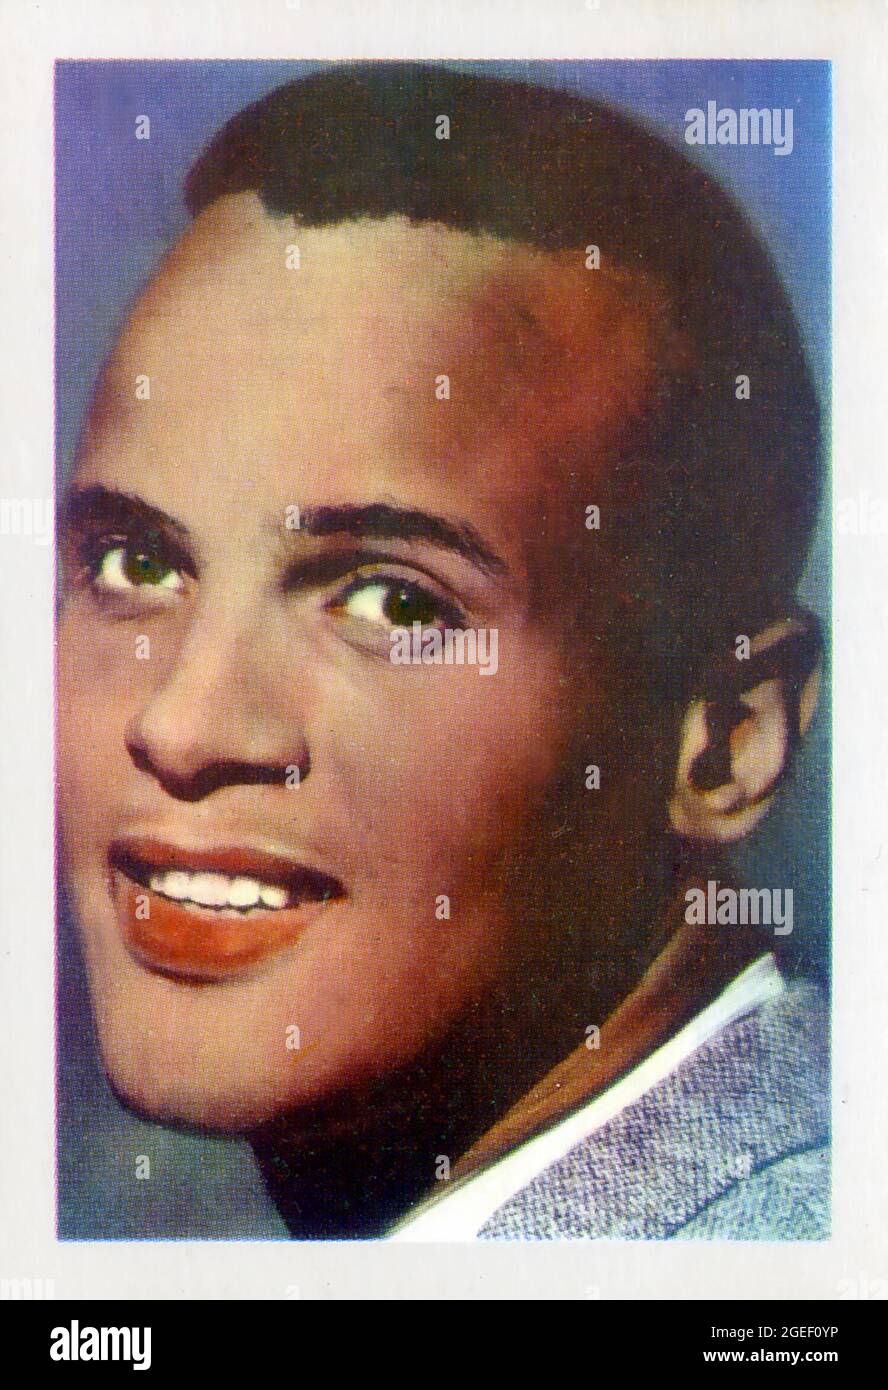 Scheda commerciale del cantante Harry Belafonte prodotto da Kane Products of Sussex, Inghilterra circa anni Sessanta Foto Stock